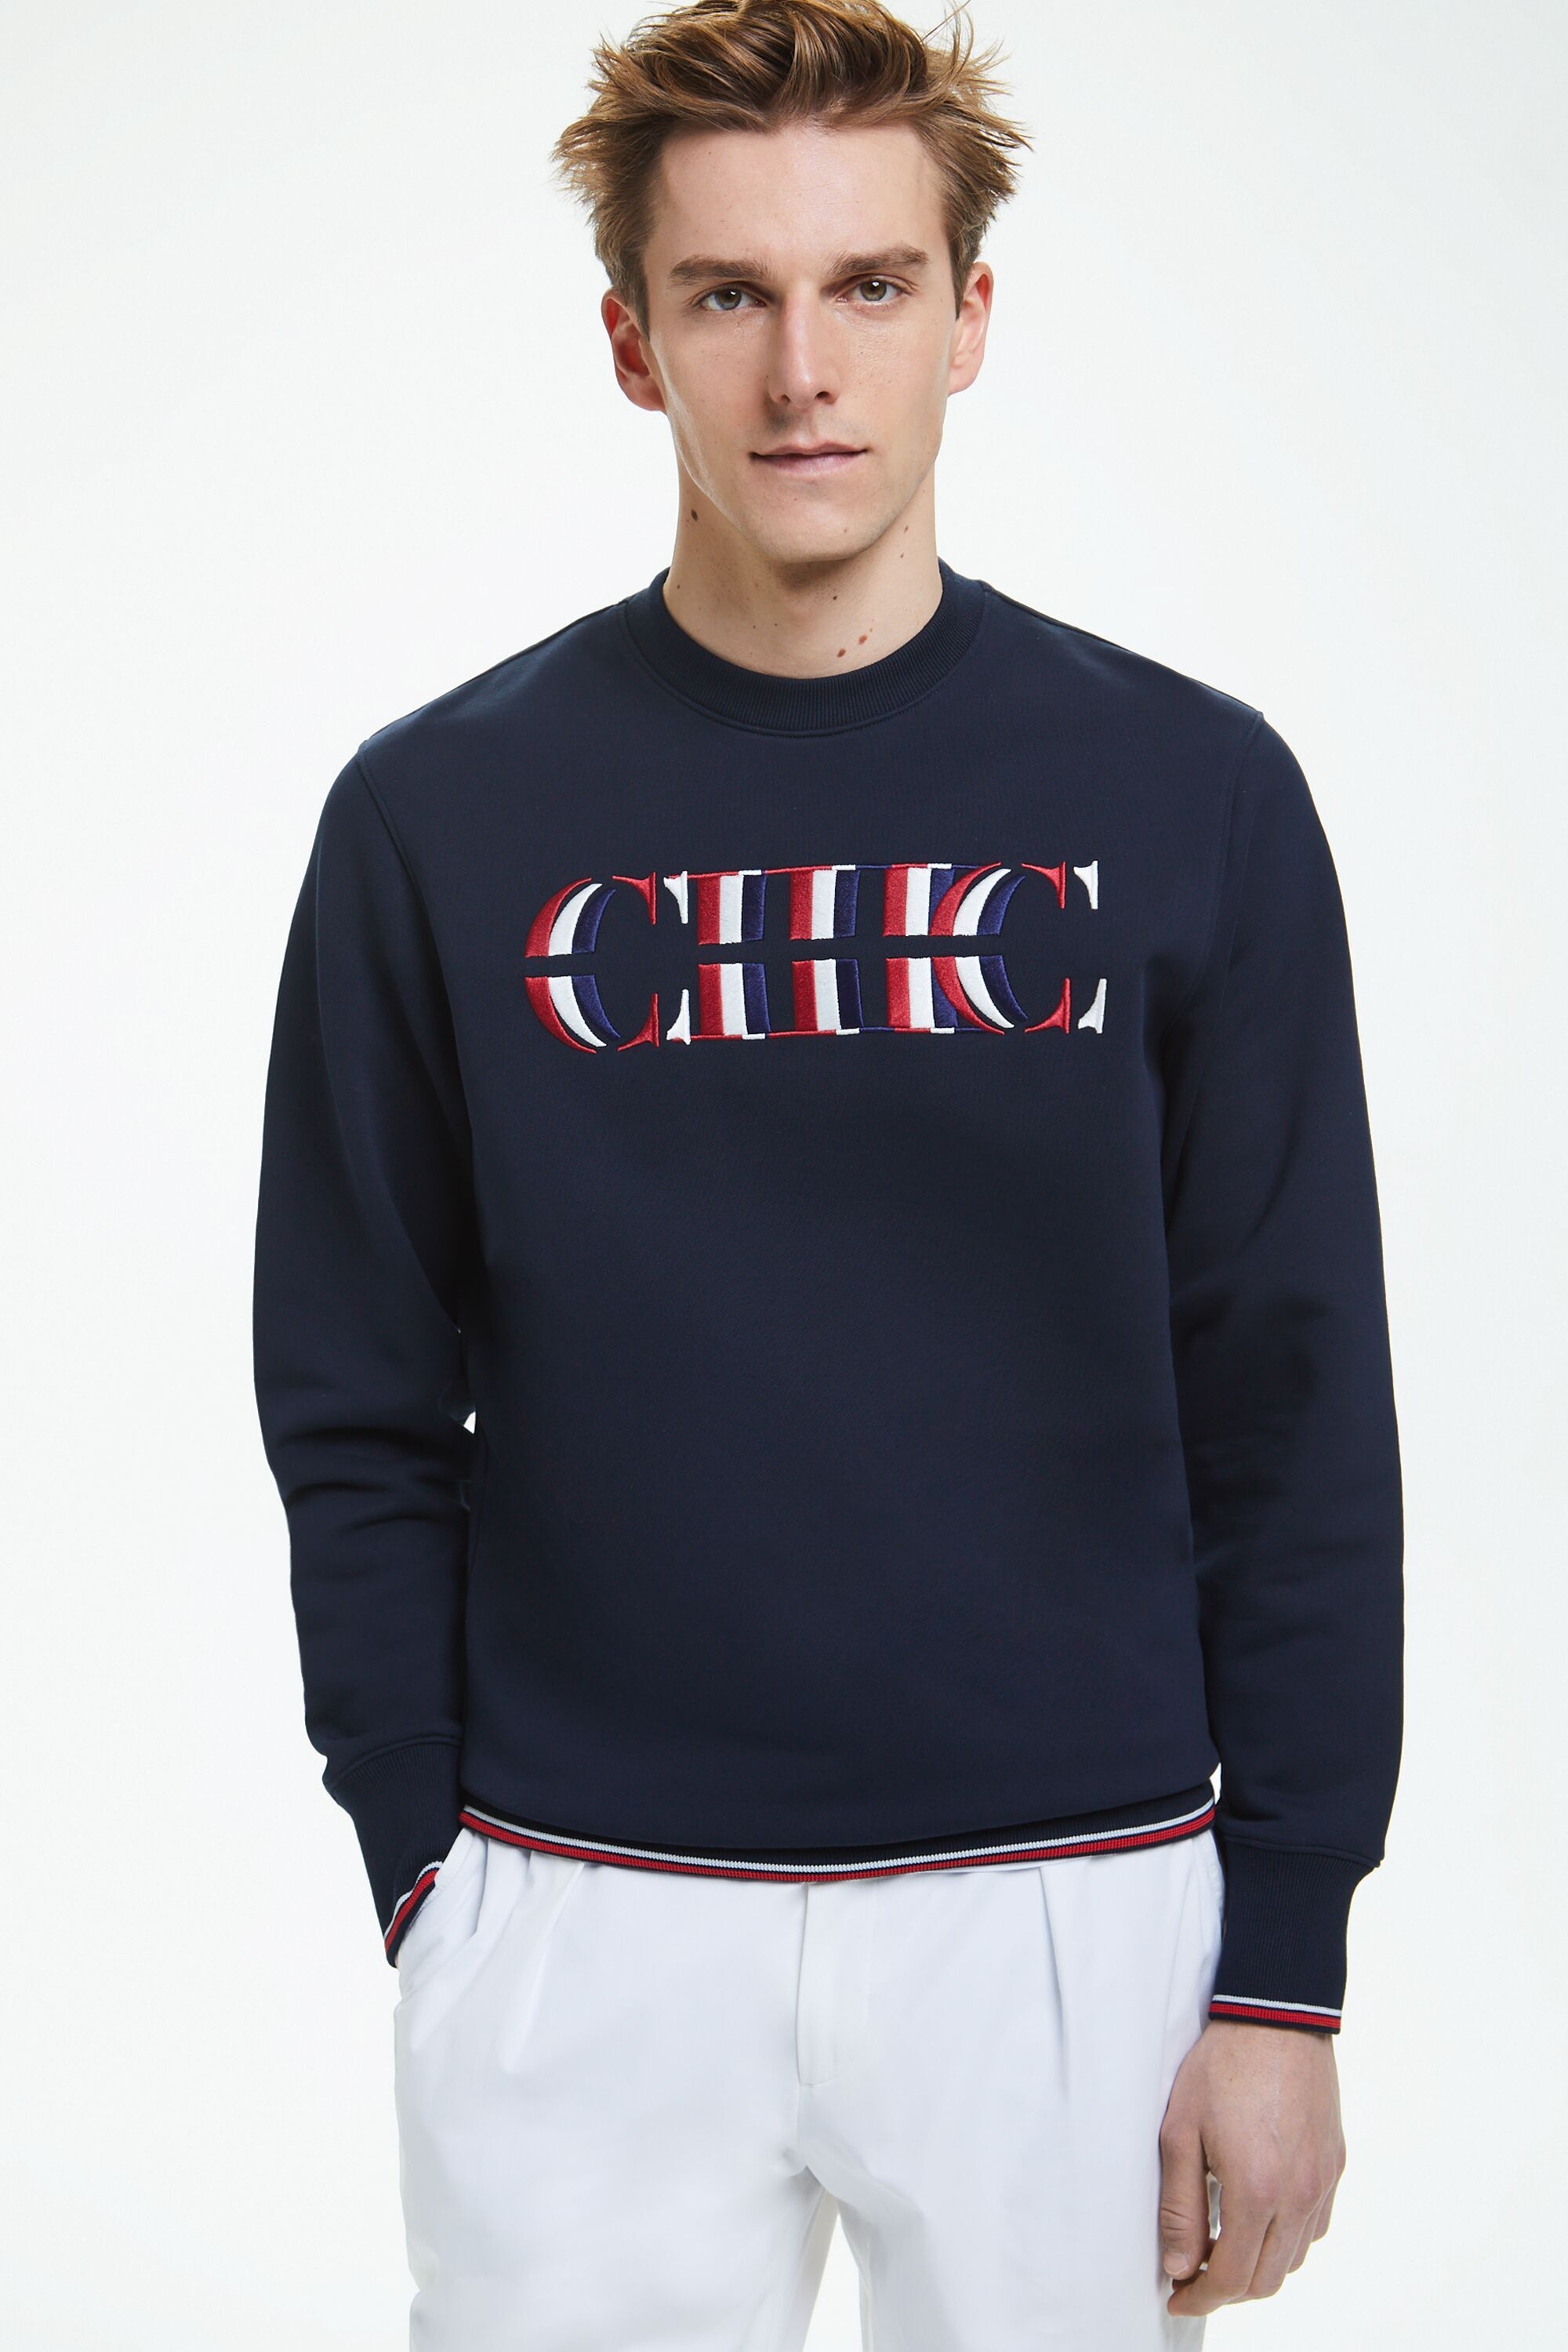 CH embroidered sweatshirt